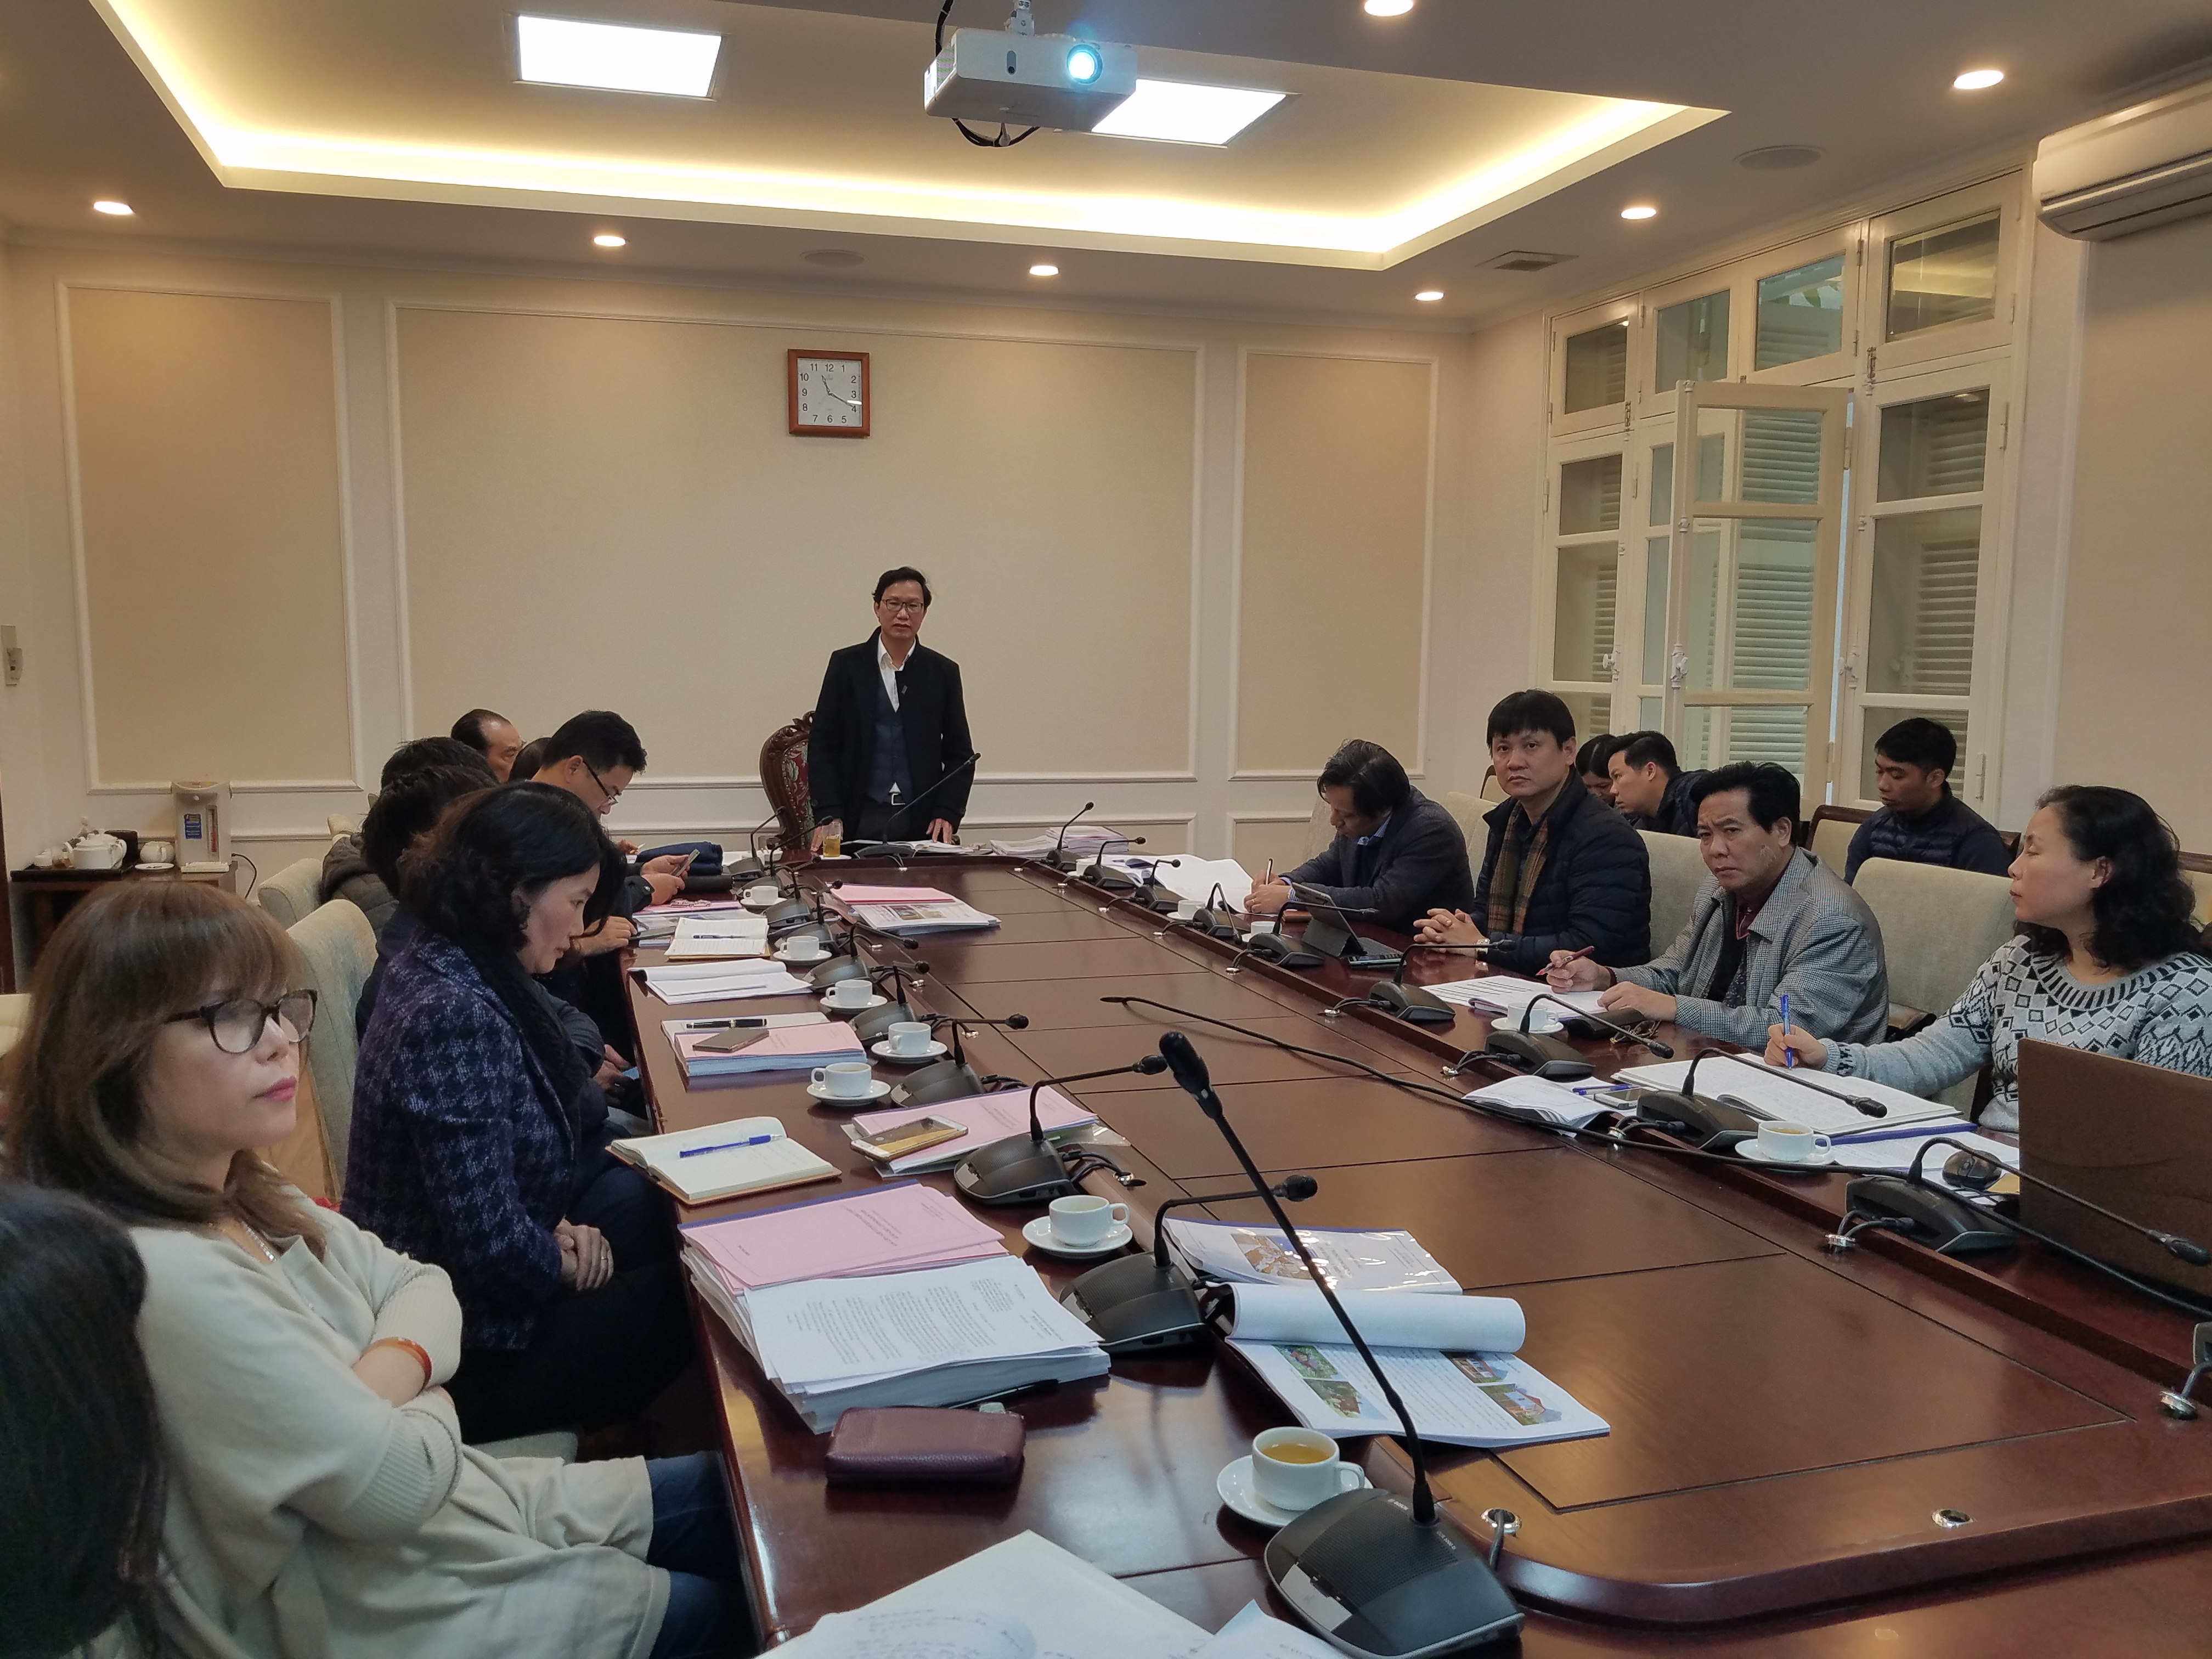 4 Thứ trưởng Bộ Xây dựng Nguyễn Đình Toàn - chủ tịch hội đồng nghiệm thu phát biểu kết luận buổi làm việc